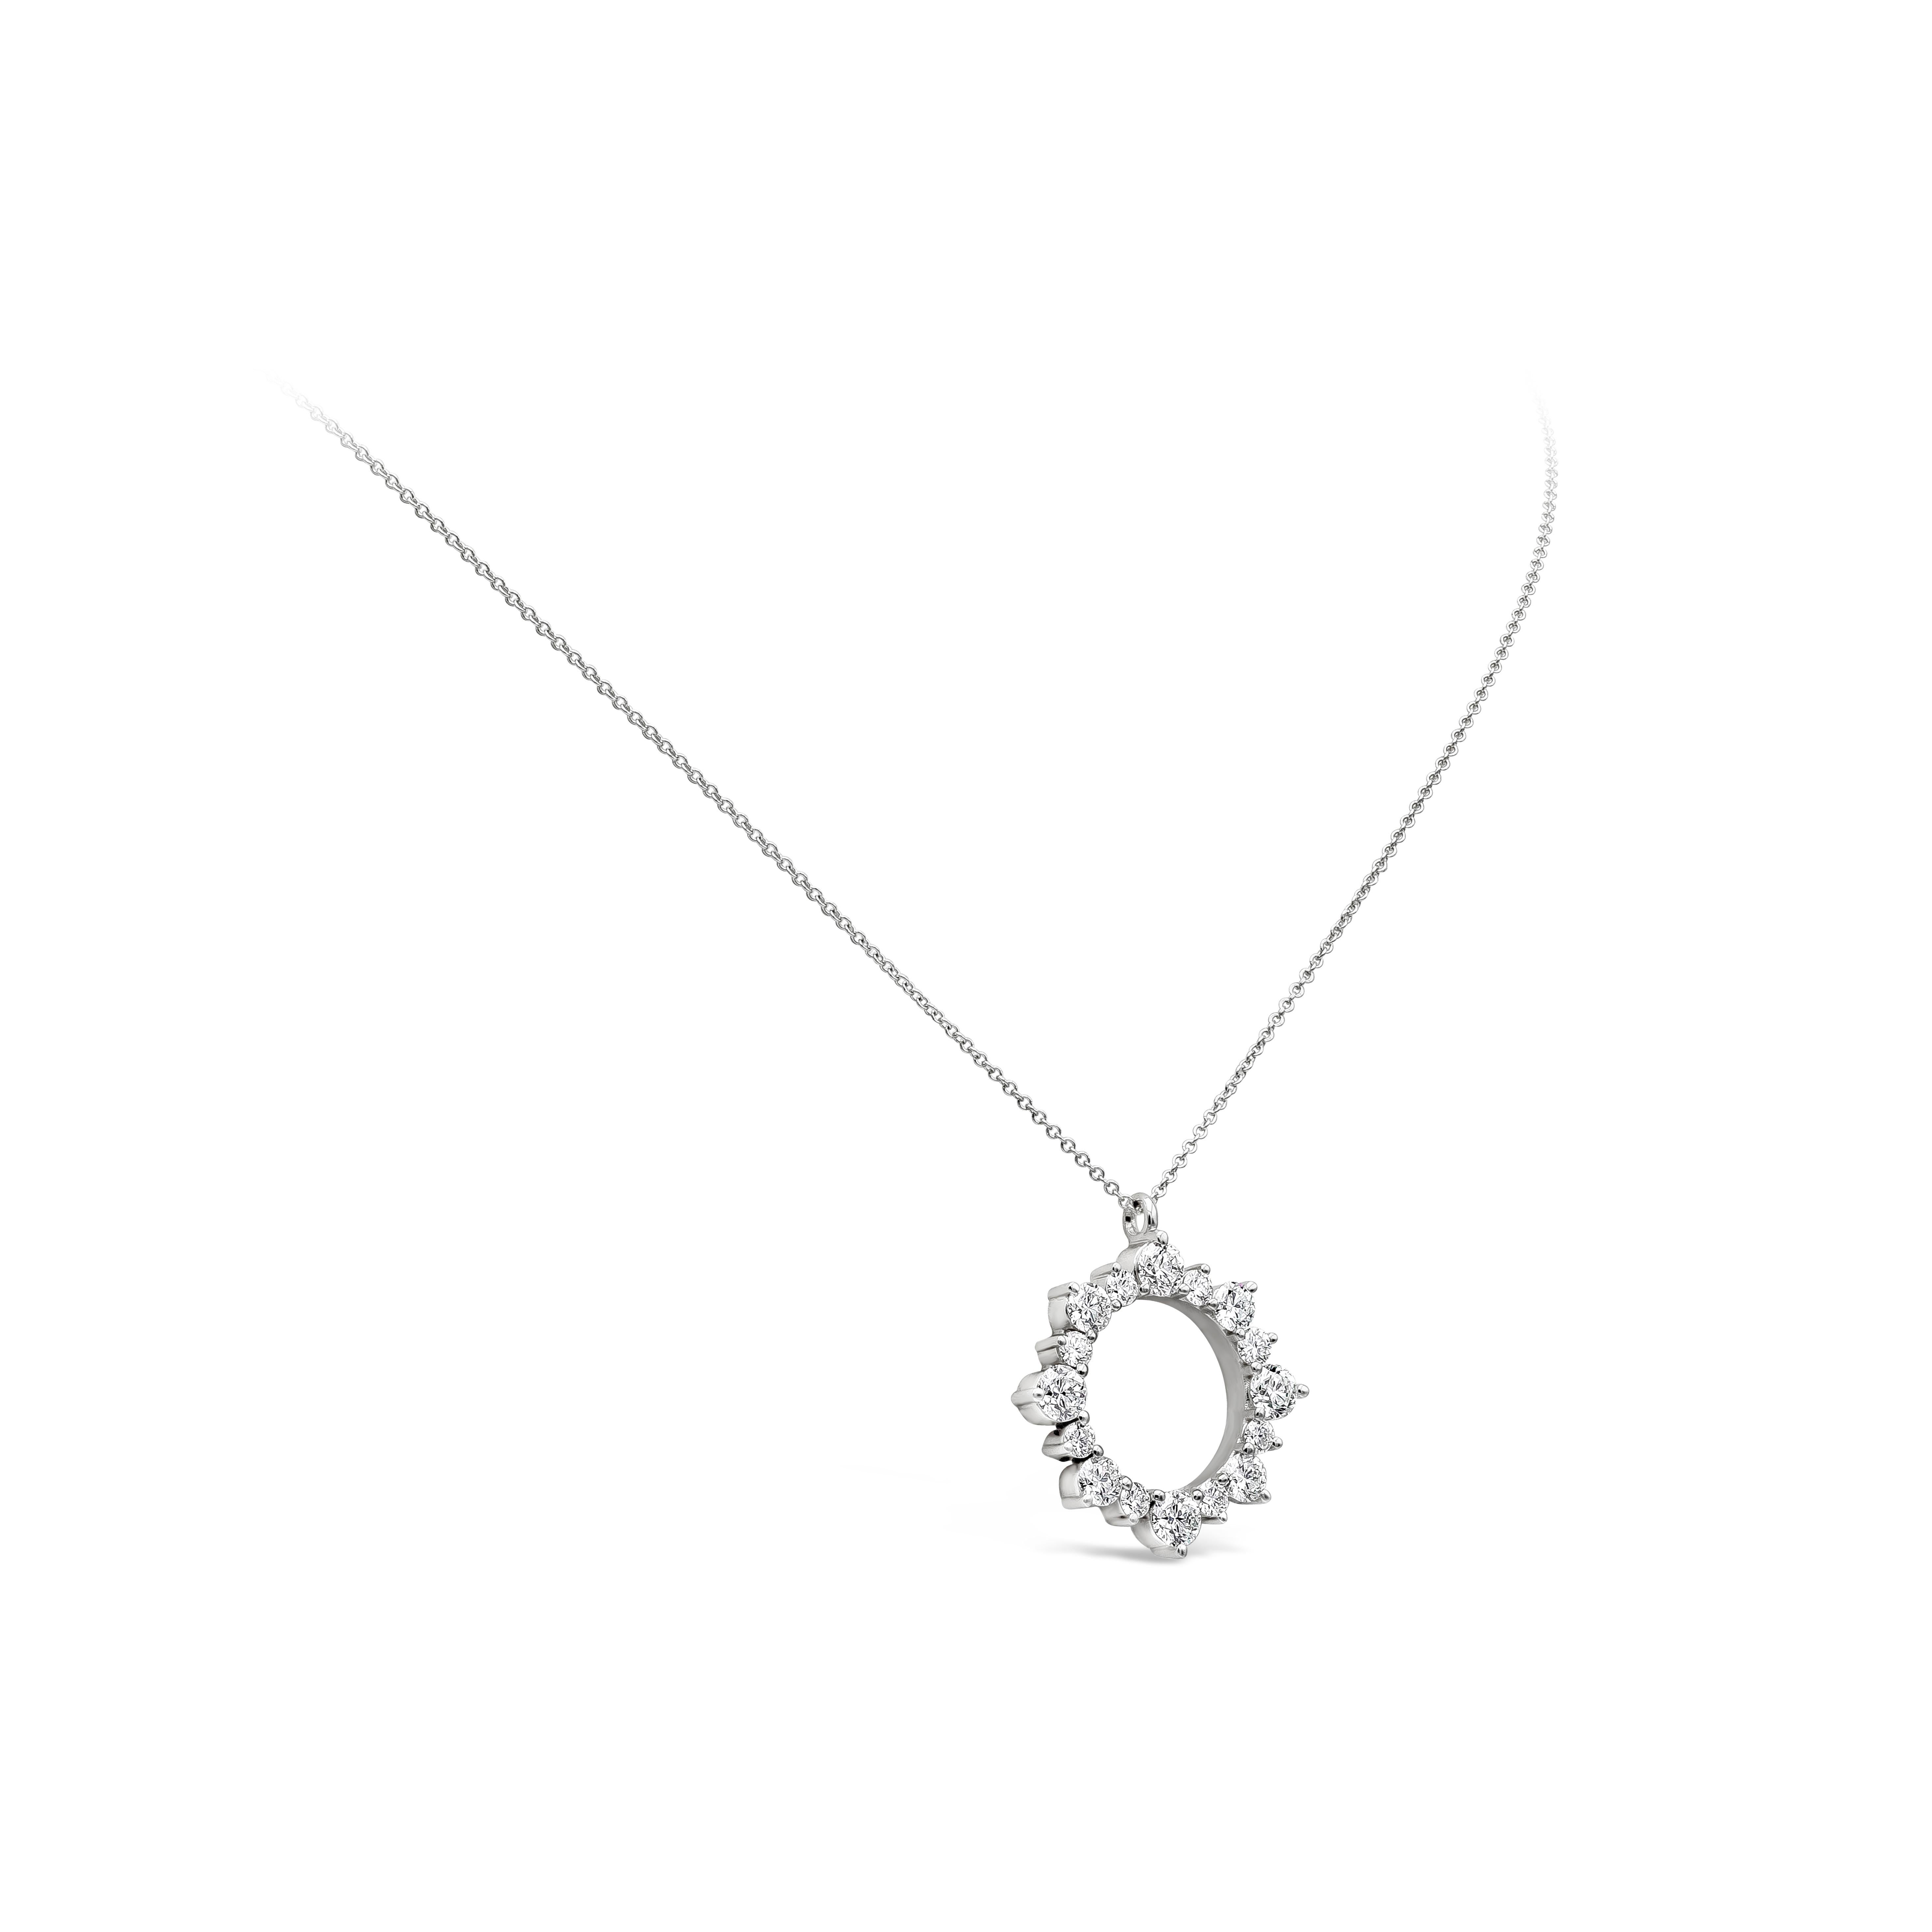 Un collier pendentif élégant mettant en valeur une rangée de 16 diamants ronds brillants,  serti dans un motif circulaire ajouré. Les diamants pèsent 4,10 carats au total et sont de couleur G, pureté VS. Fabriqué en or blanc 18 carats.

Roman